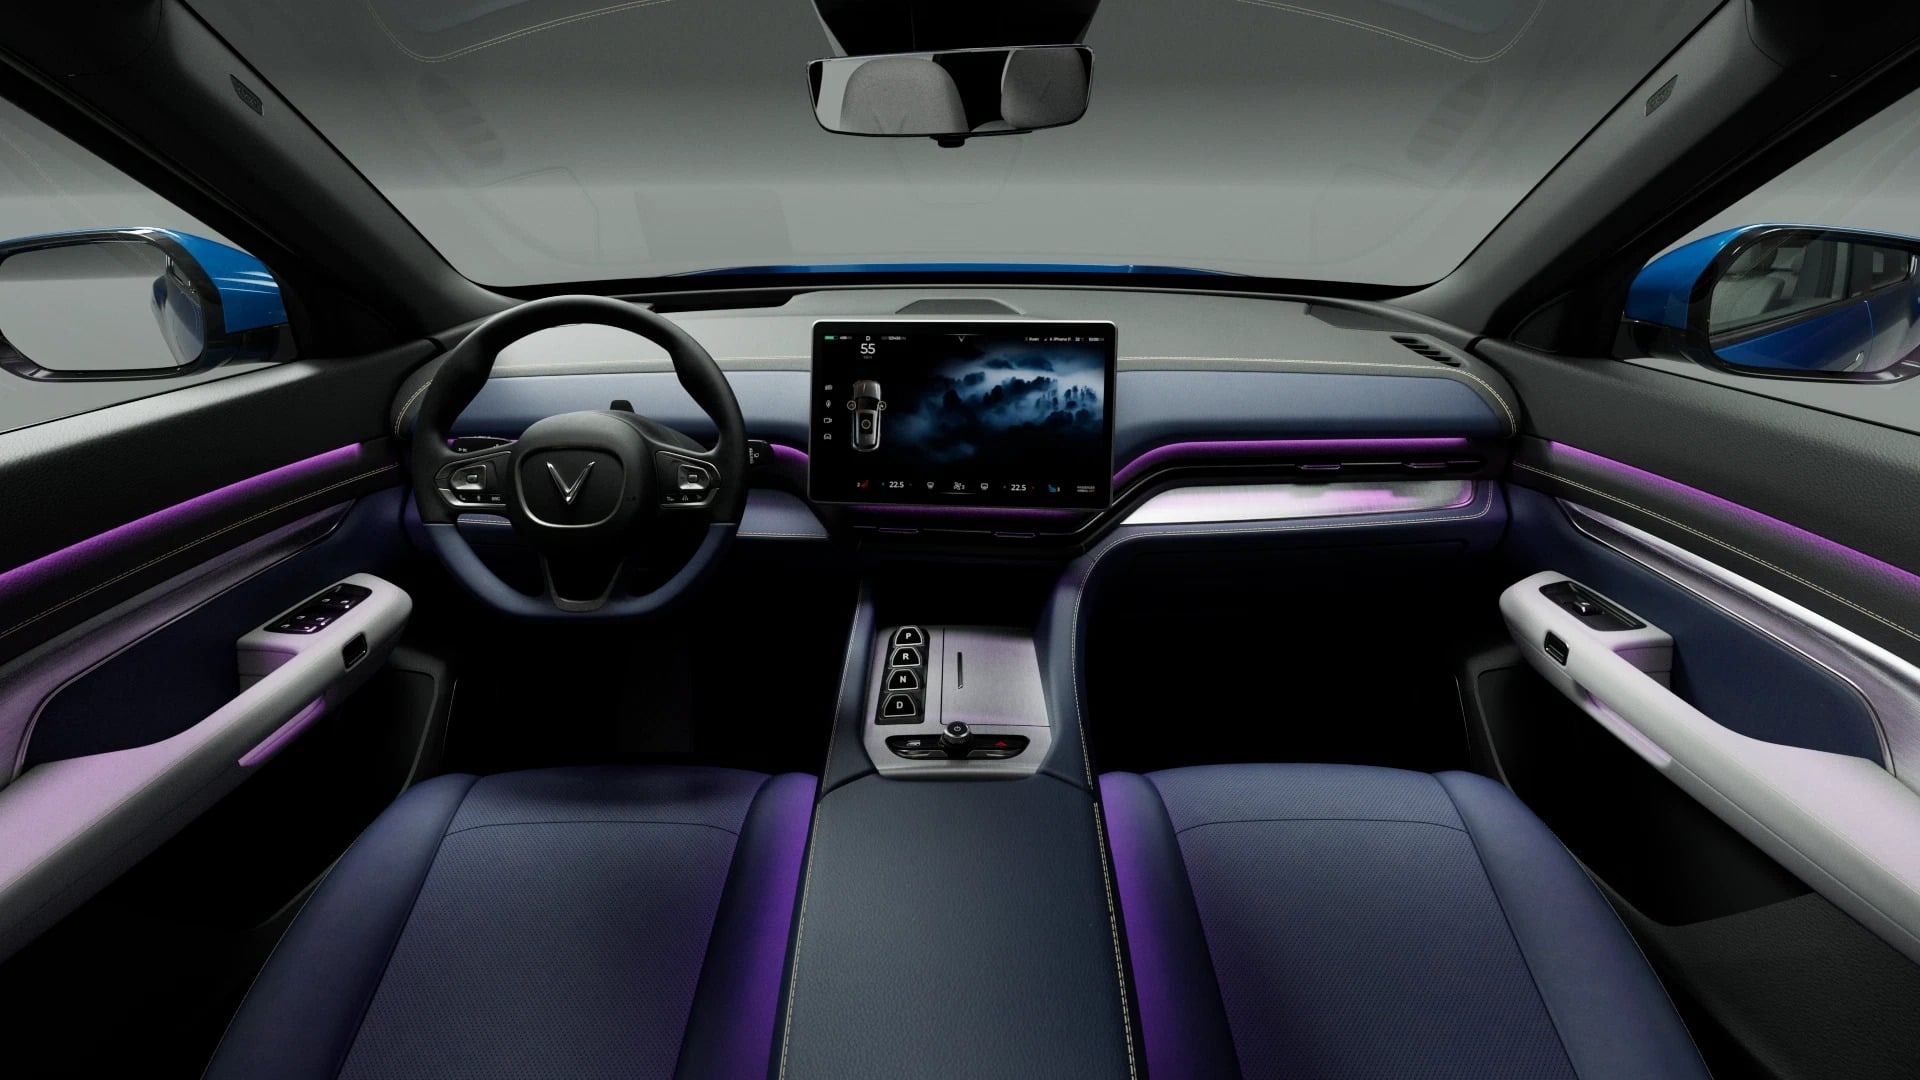 nội thất xe vinfast vf 9 với màn hình giải trí cảm ứng đa năng đặt tại vị trí trung tâm